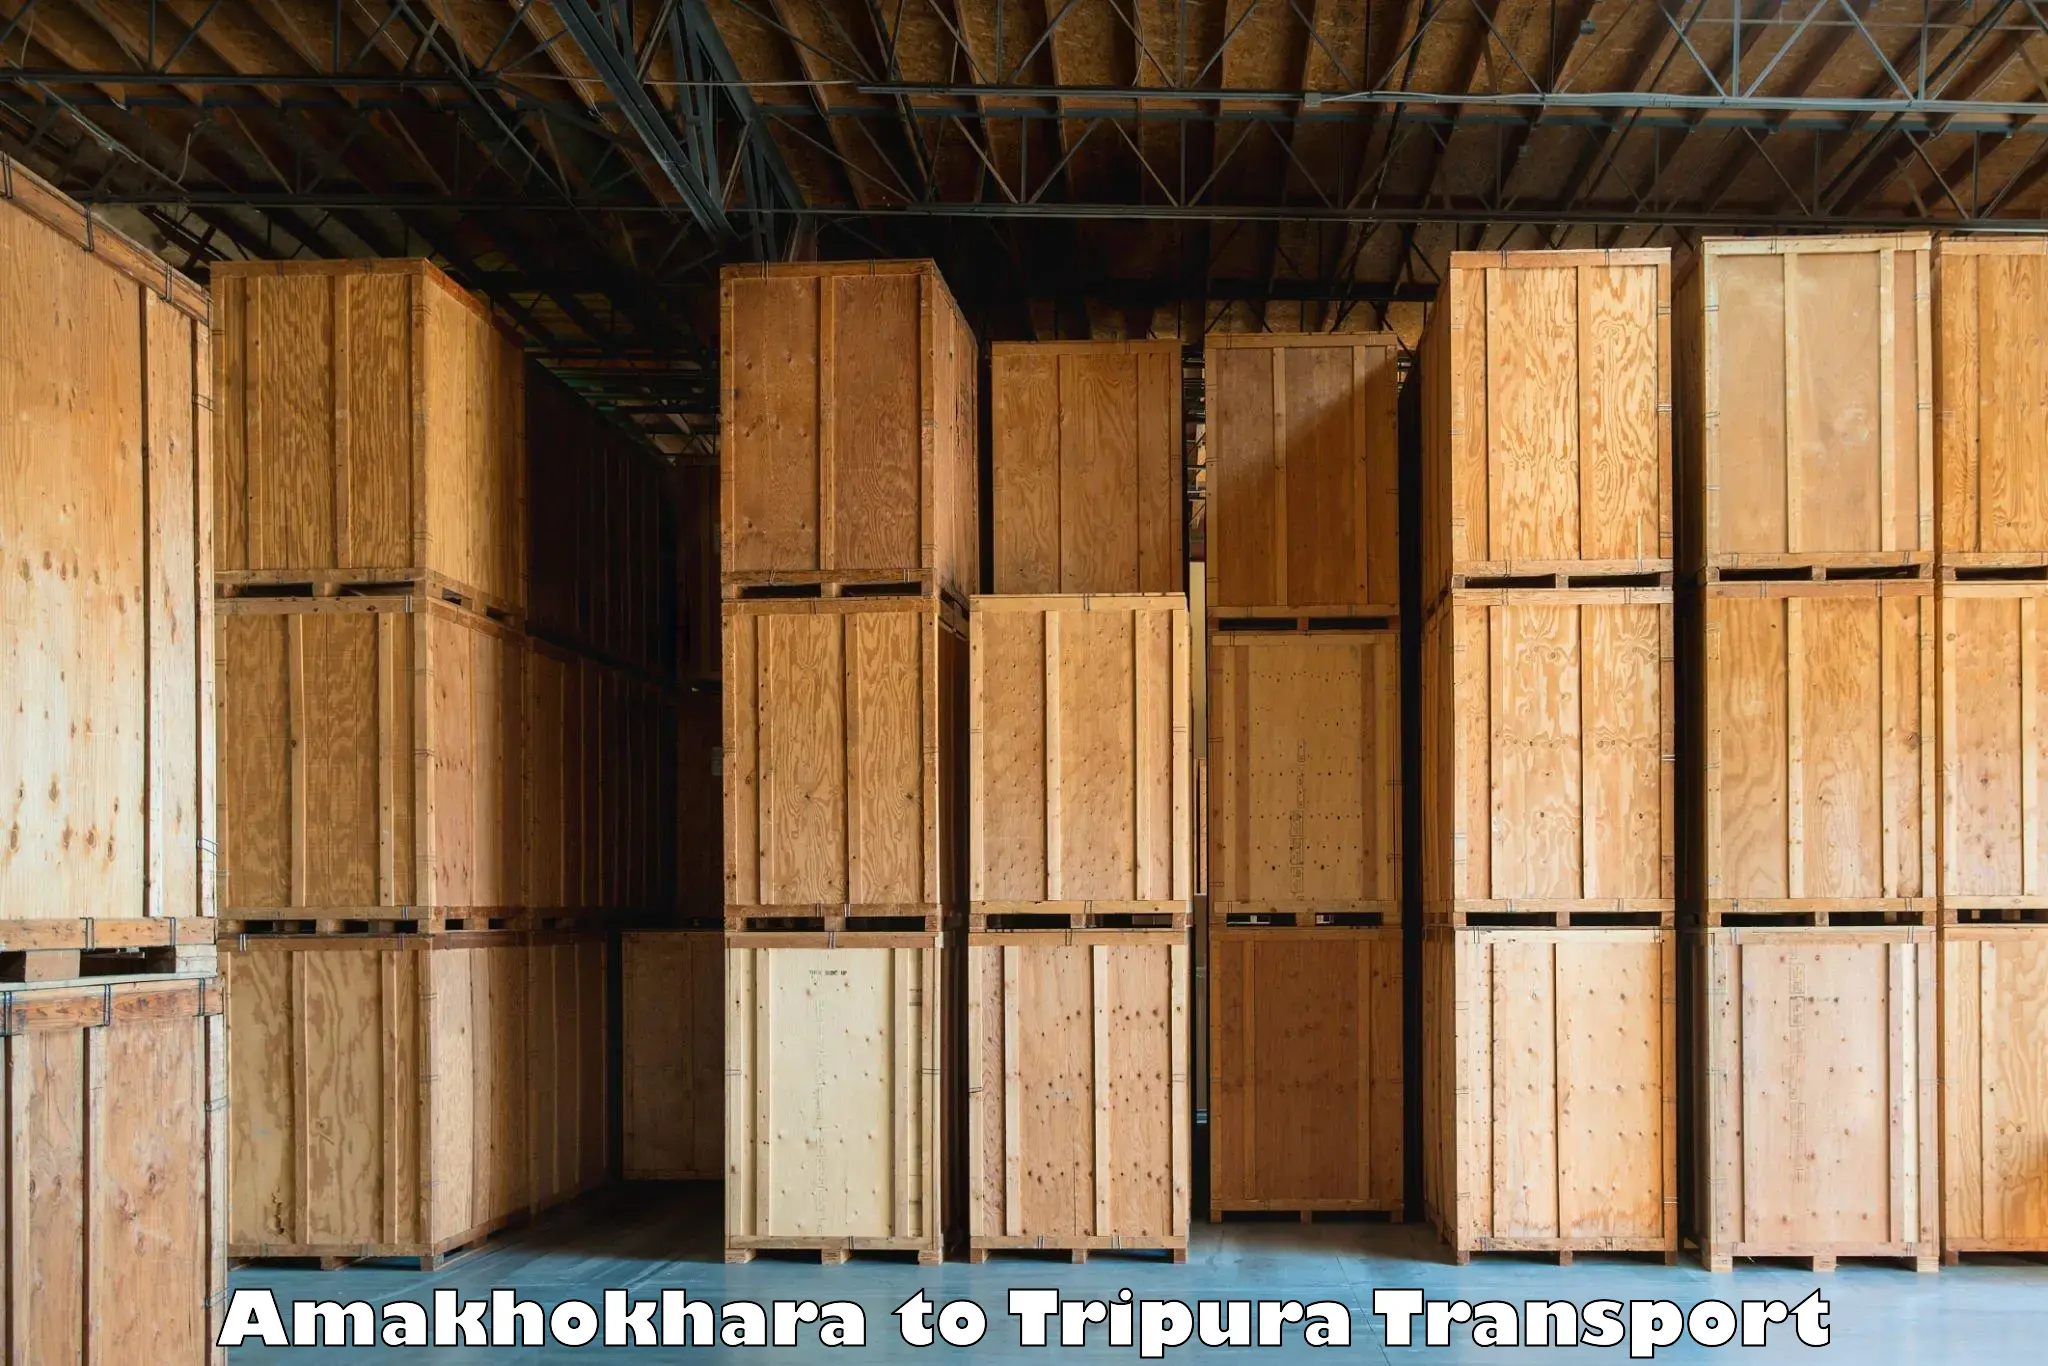 Nearest transport service Amakhokhara to Udaipur Tripura